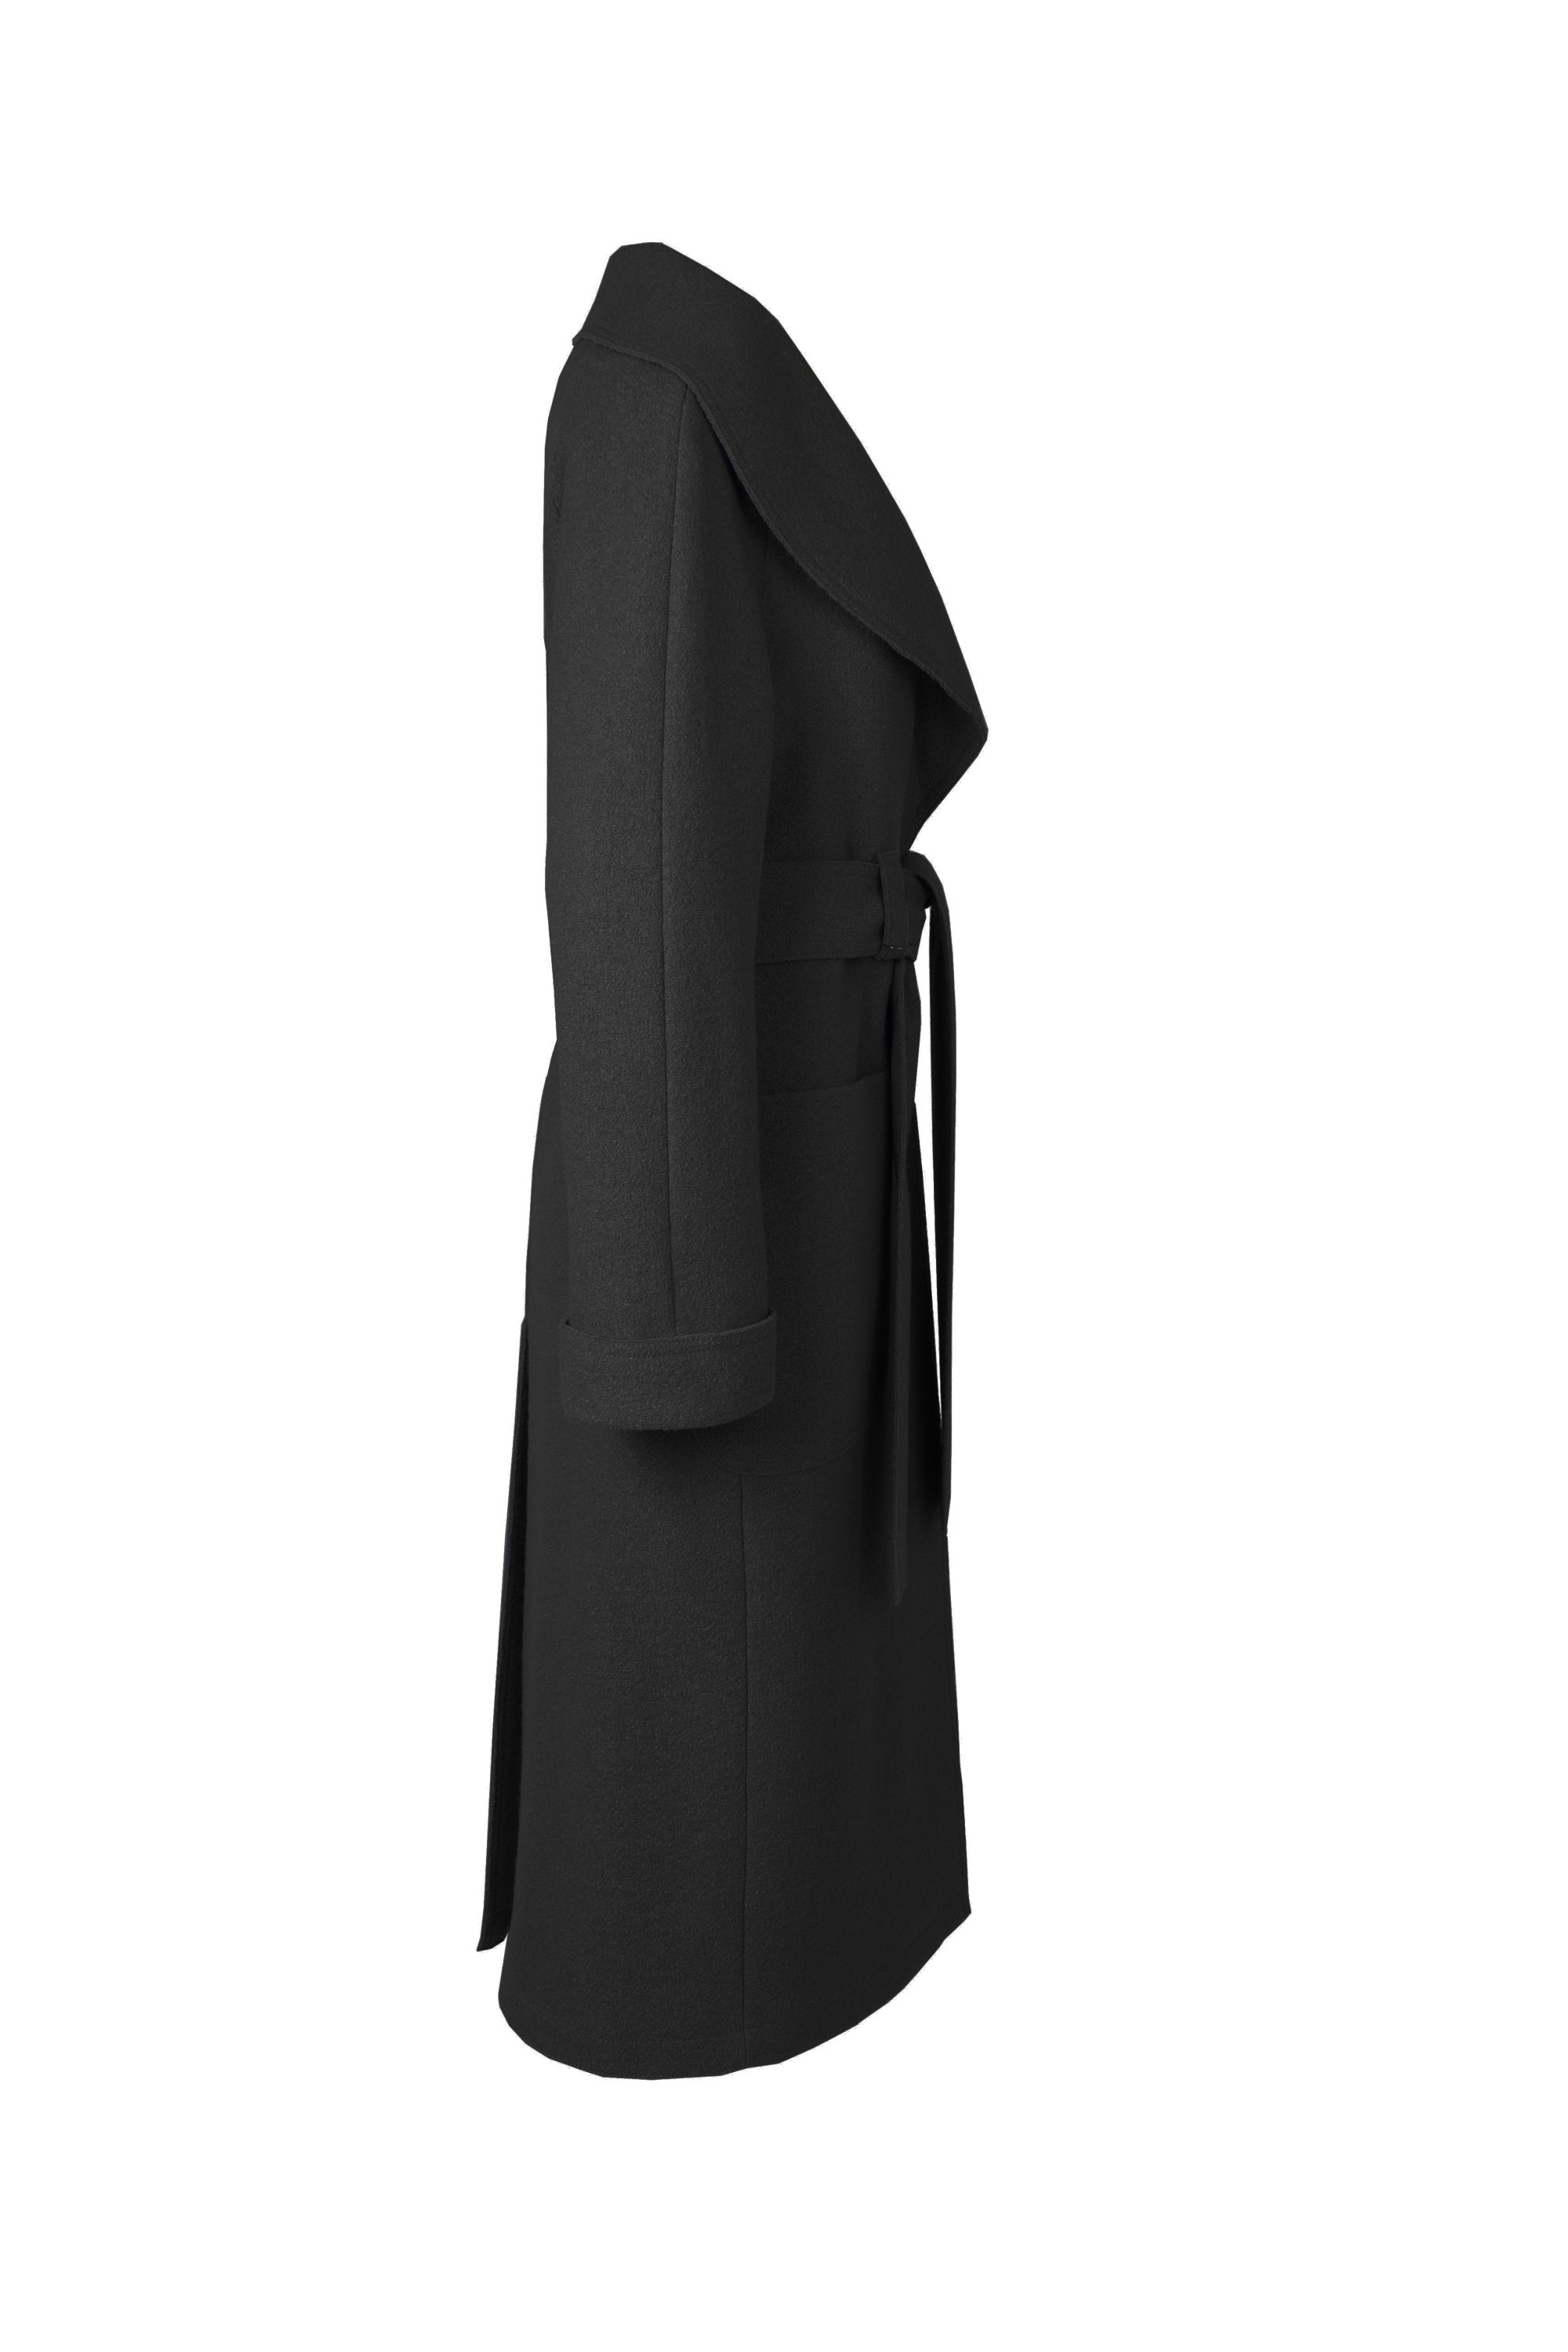 Пальто женское демисезонное 1-12466-1